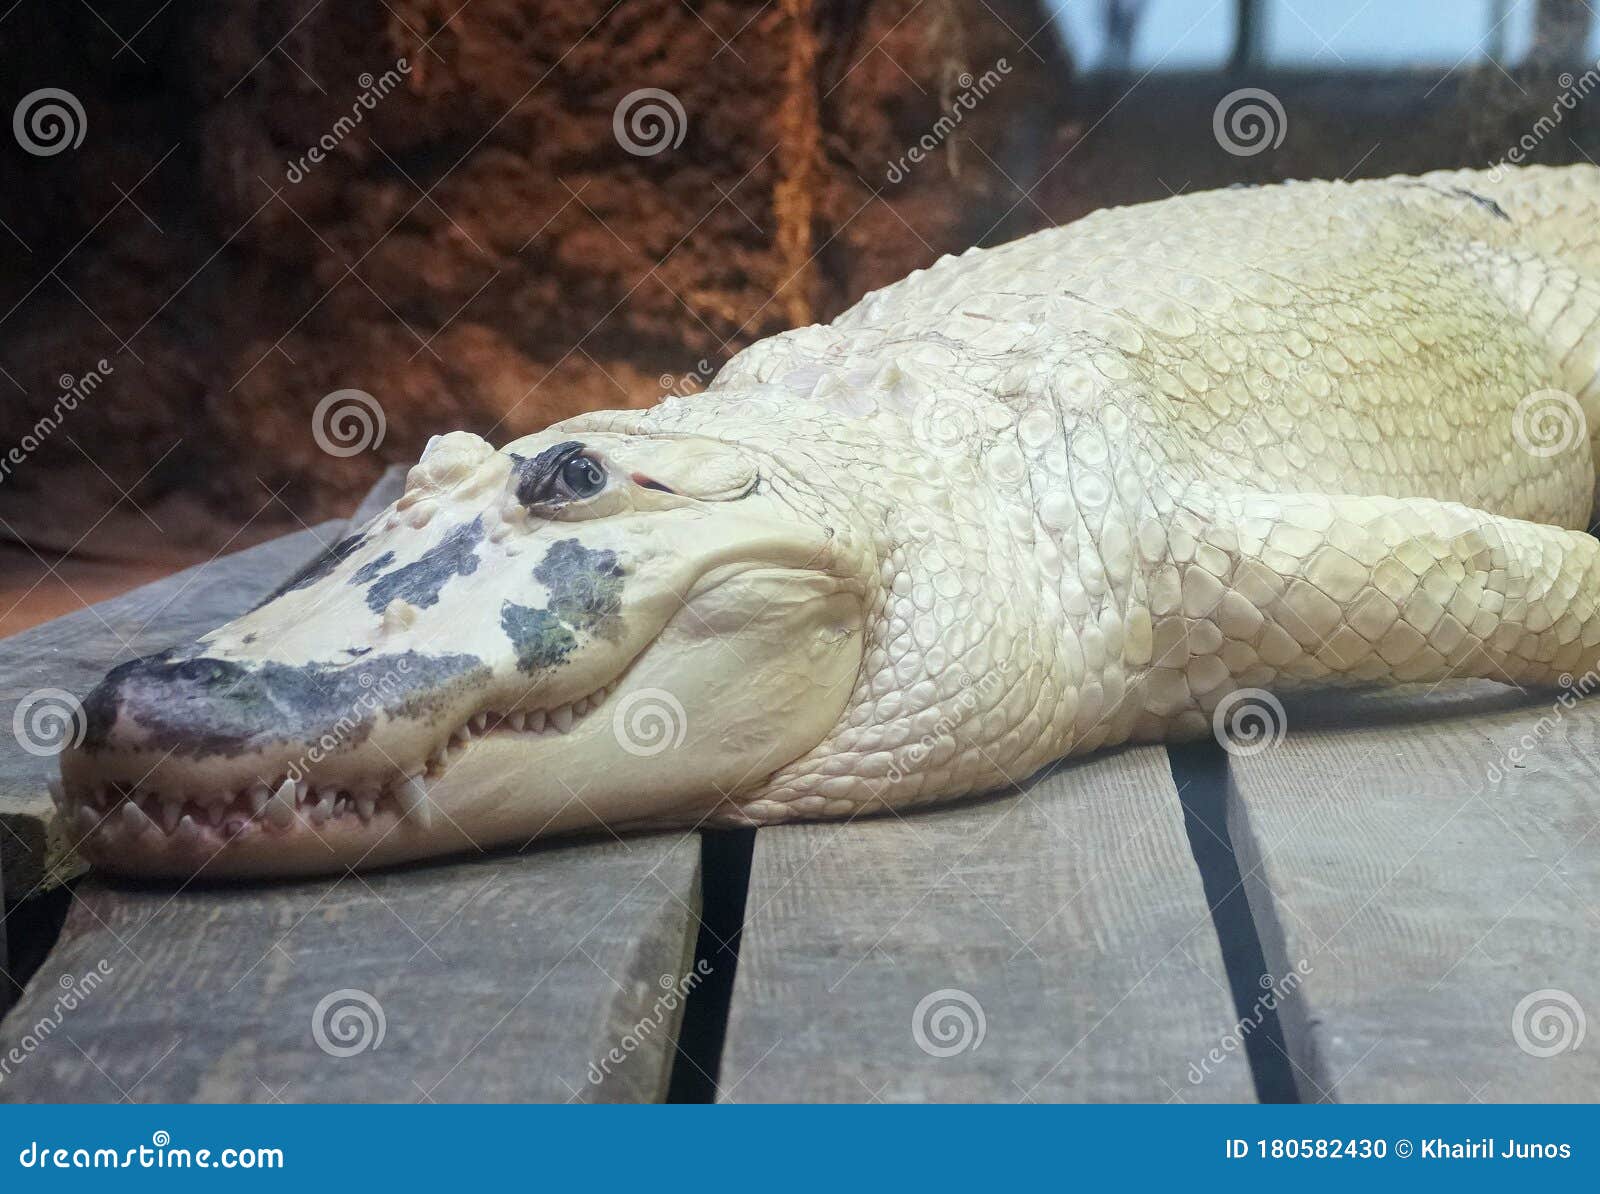 albino alligator purse